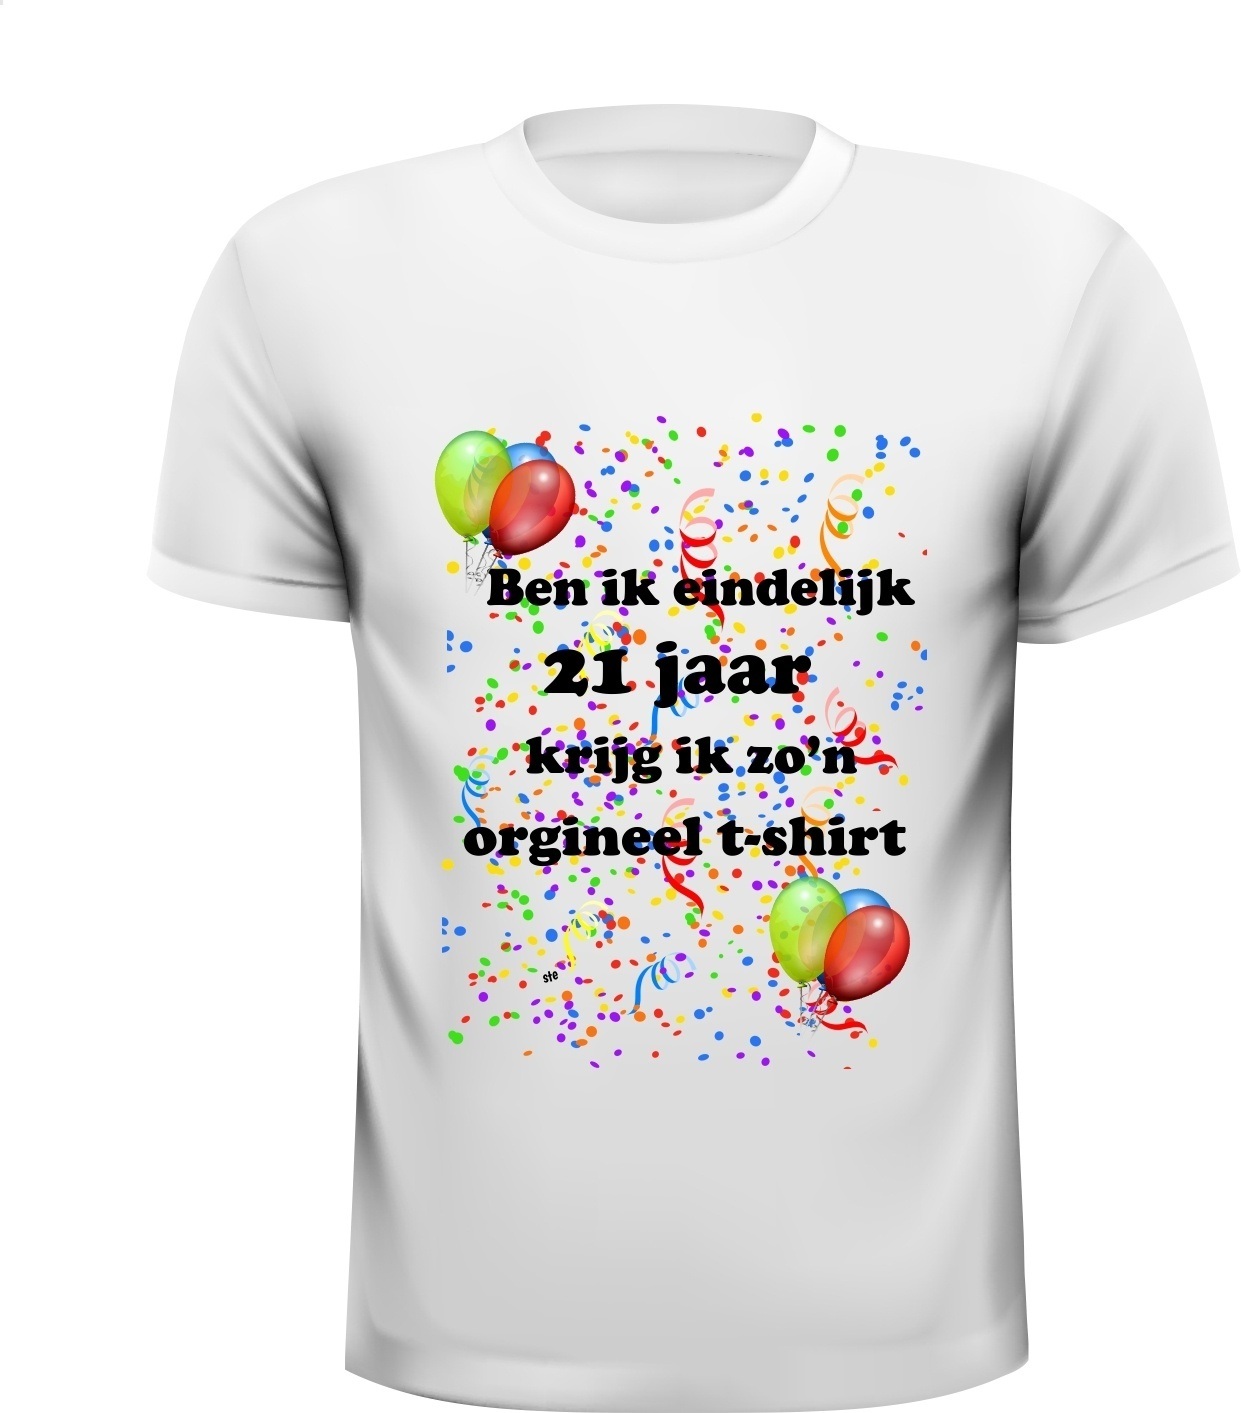 Leuk shirt verjaardag orgineel 21 jaar met grappige tekst en kleurrijke print